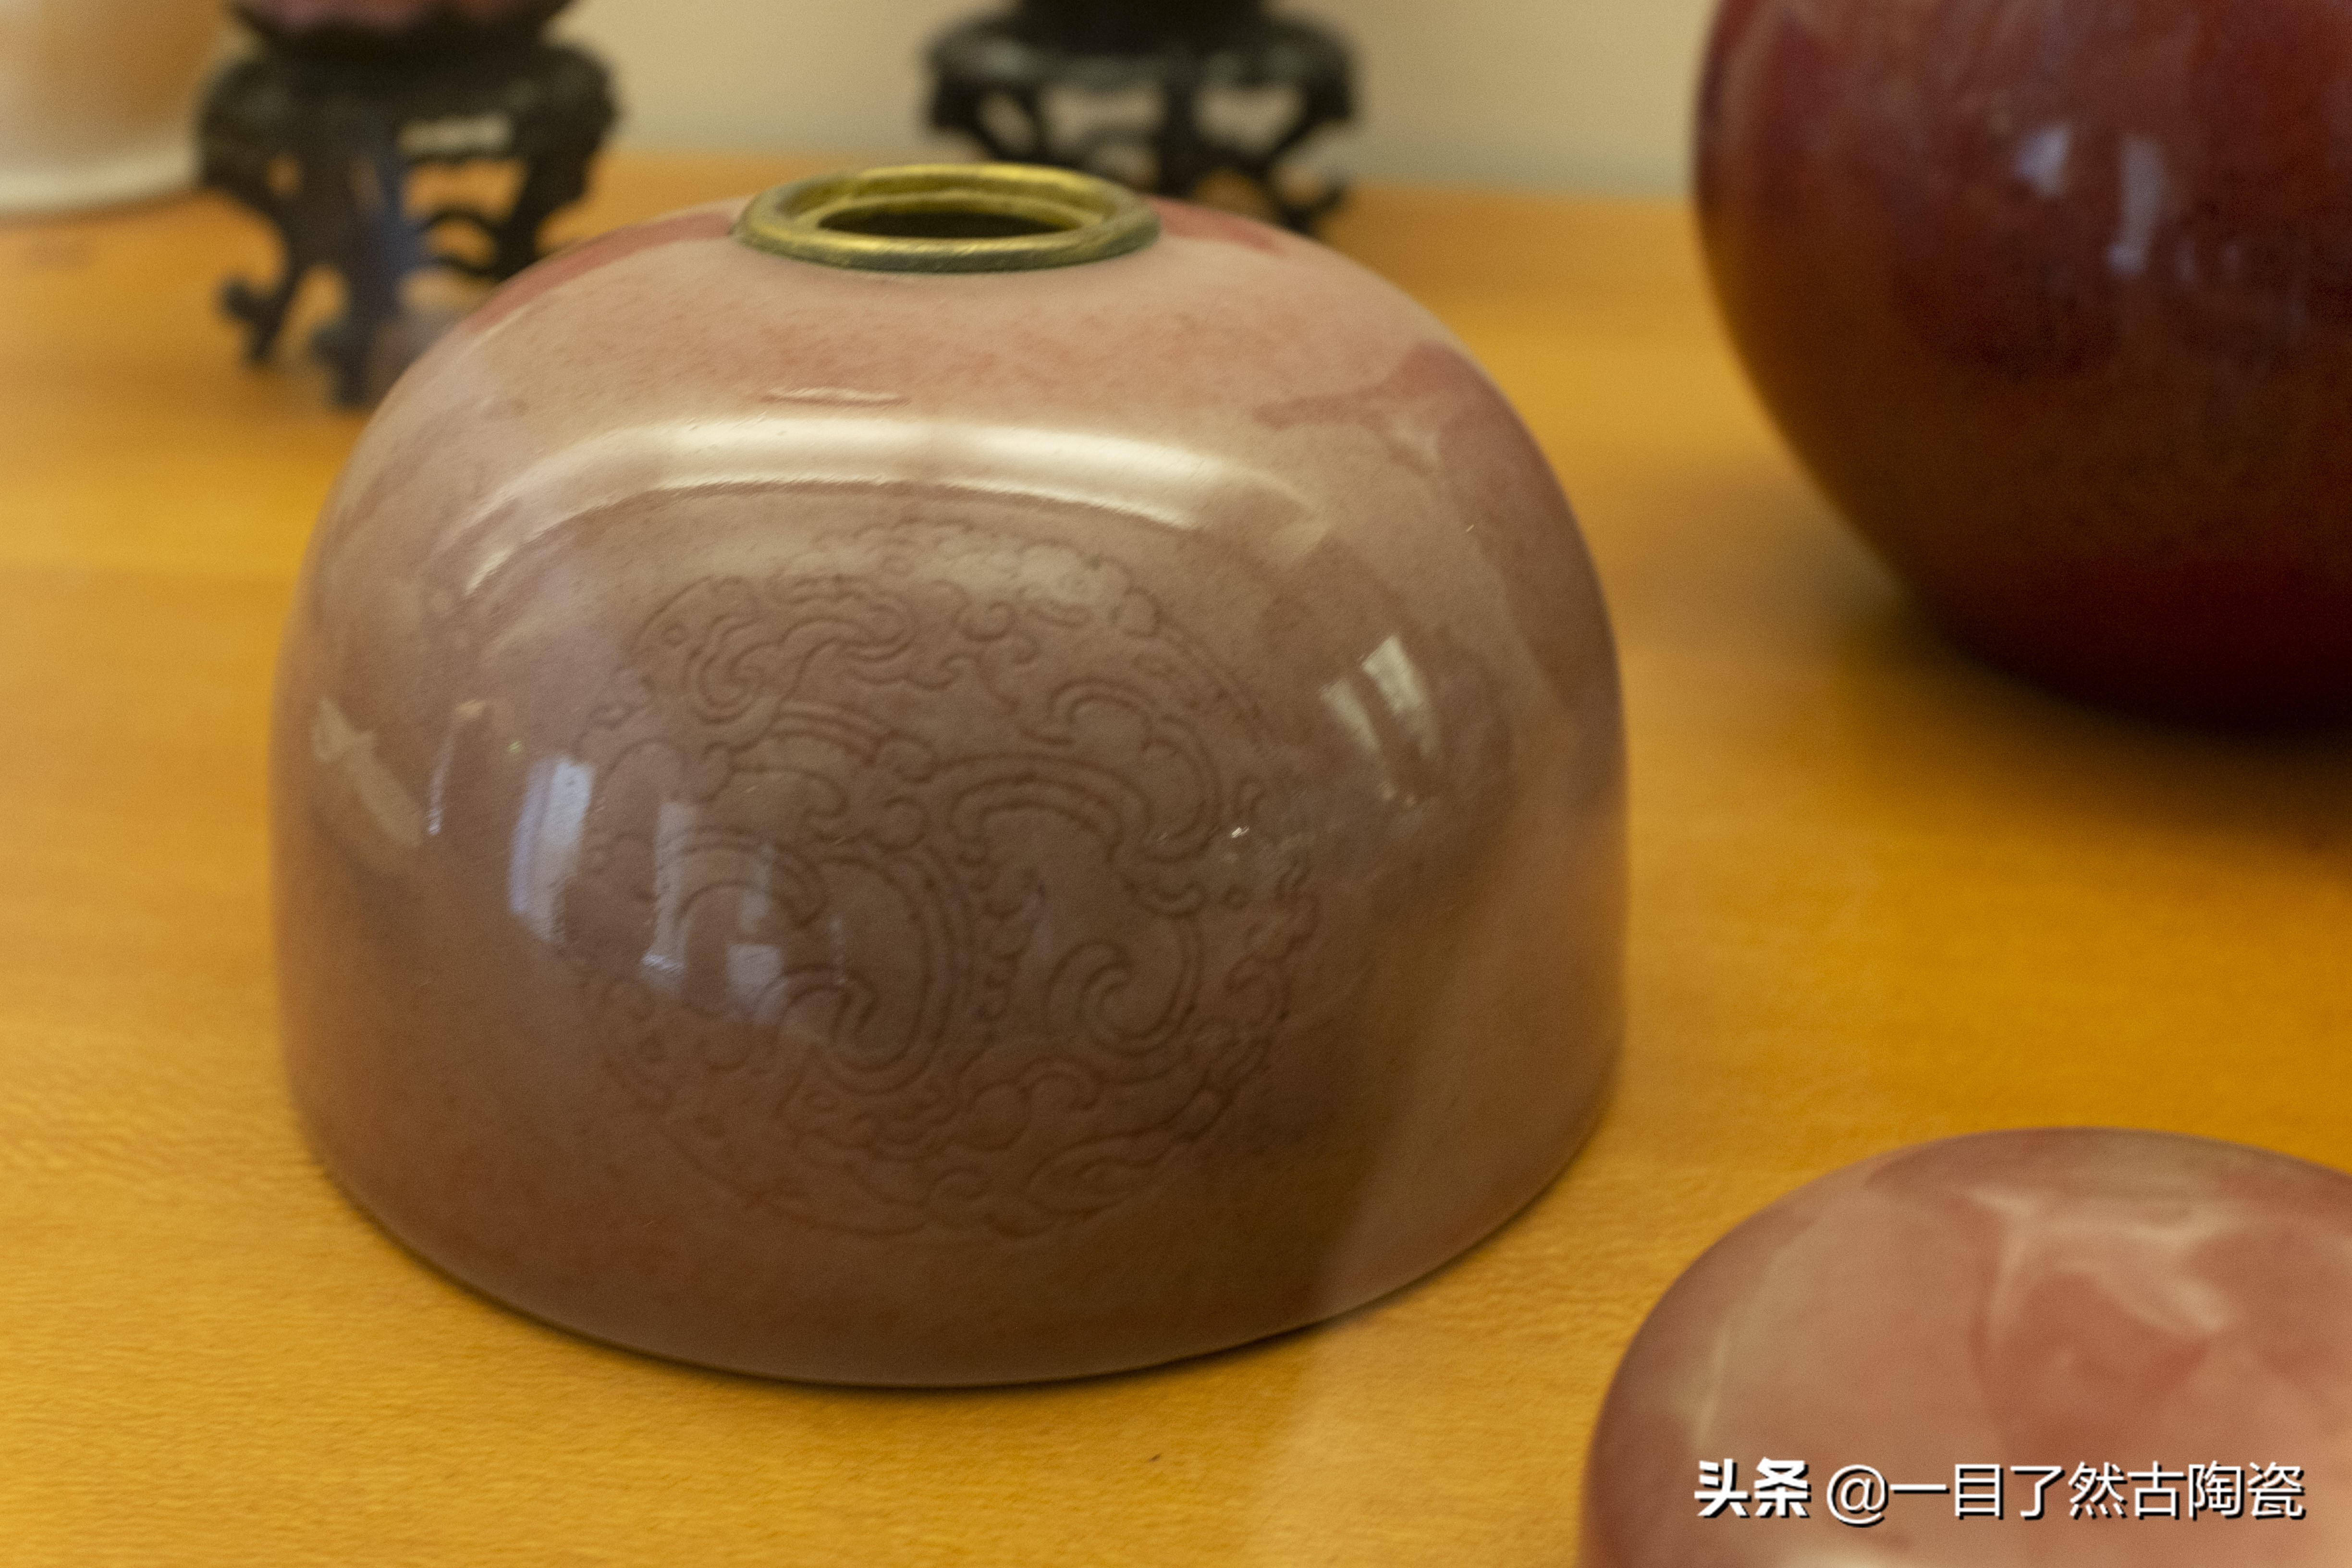 135张图在线观赏：法国吉美博物馆的中国古瓷器(一)